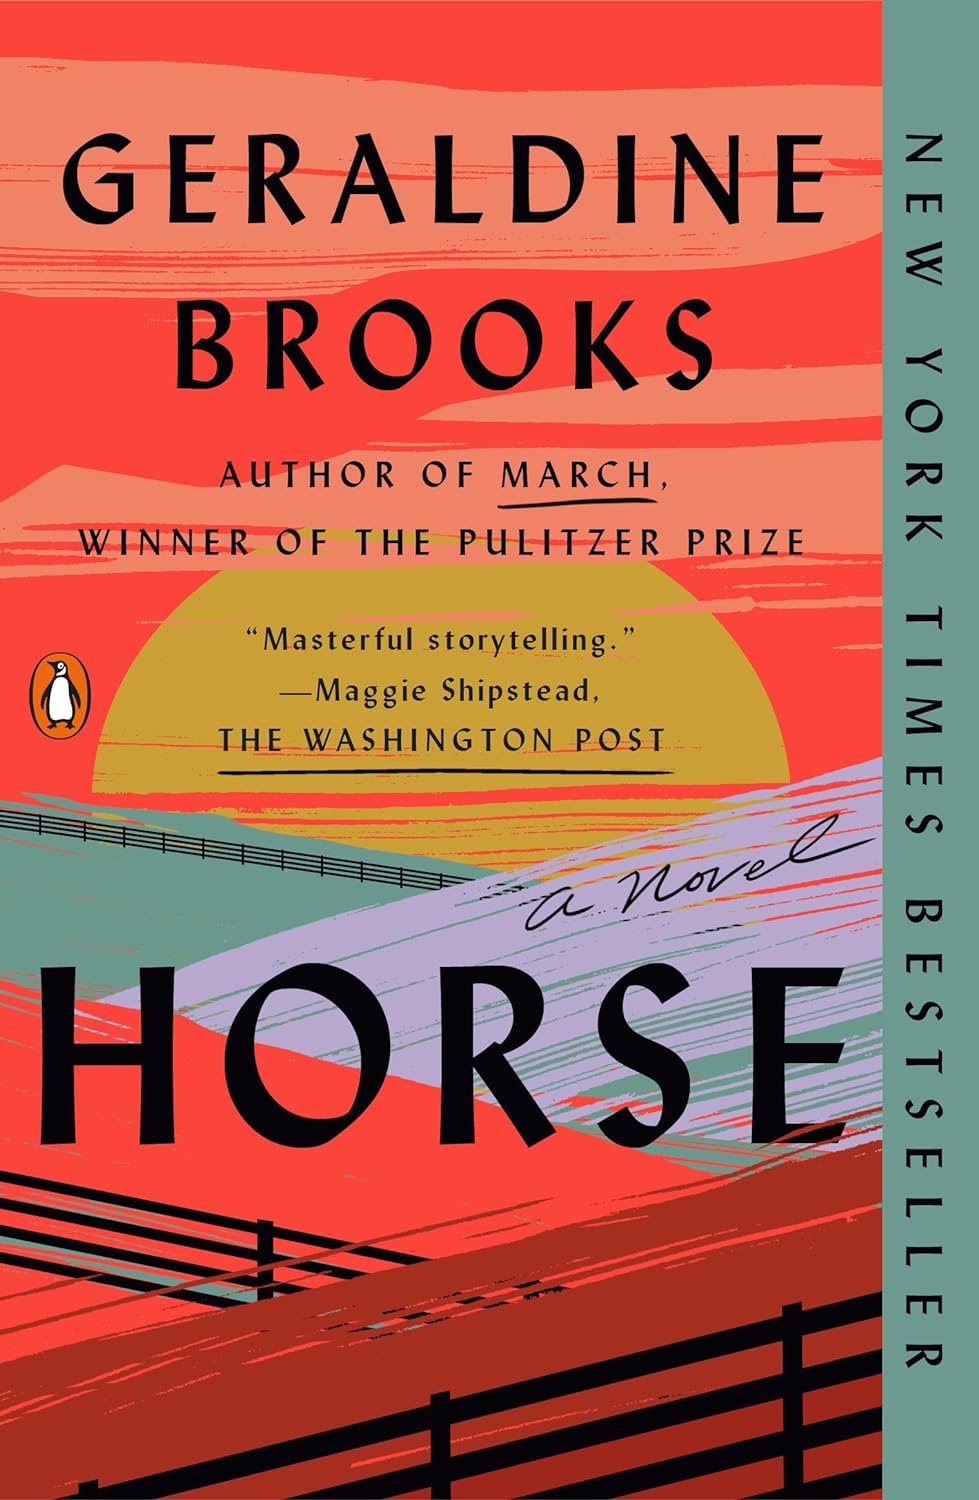 Horse - SureShot Books Publishing LLC